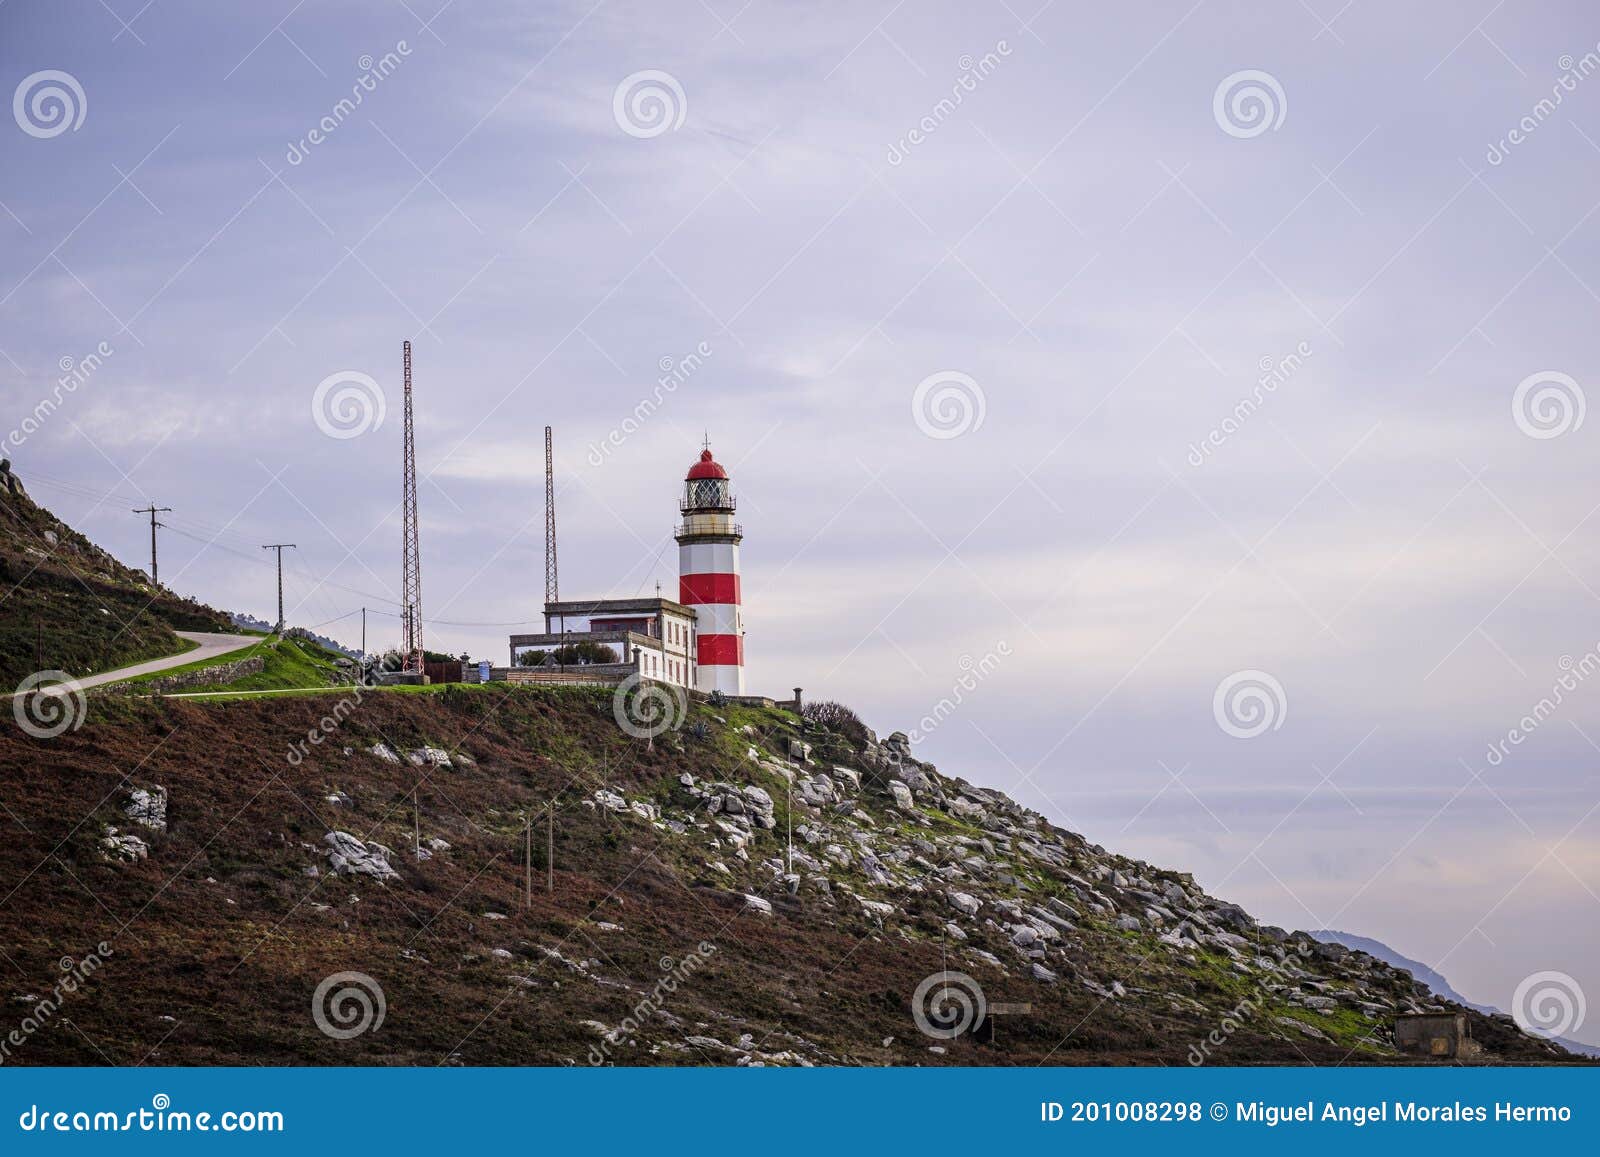 cabo silleiro lighthouse , galicia, spain